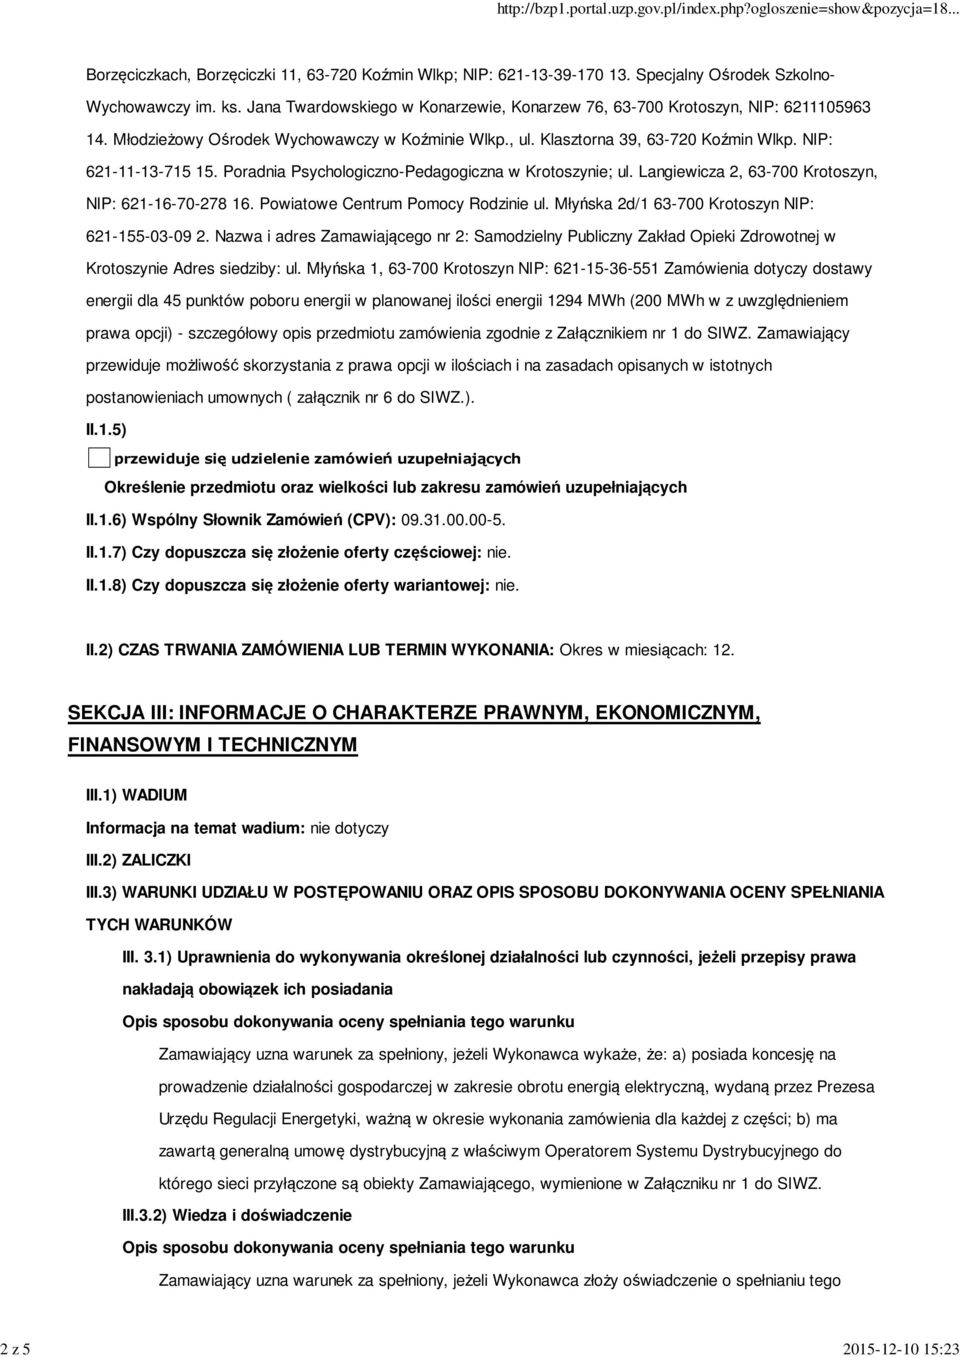 Poradnia Psychologiczno-Pedagogiczna w Krotoszynie; ul. Langiewicza 2, 63-700 Krotoszyn, NIP: 621-16-70-278 16. Powiatowe Centrum Pomocy Rodzinie ul.